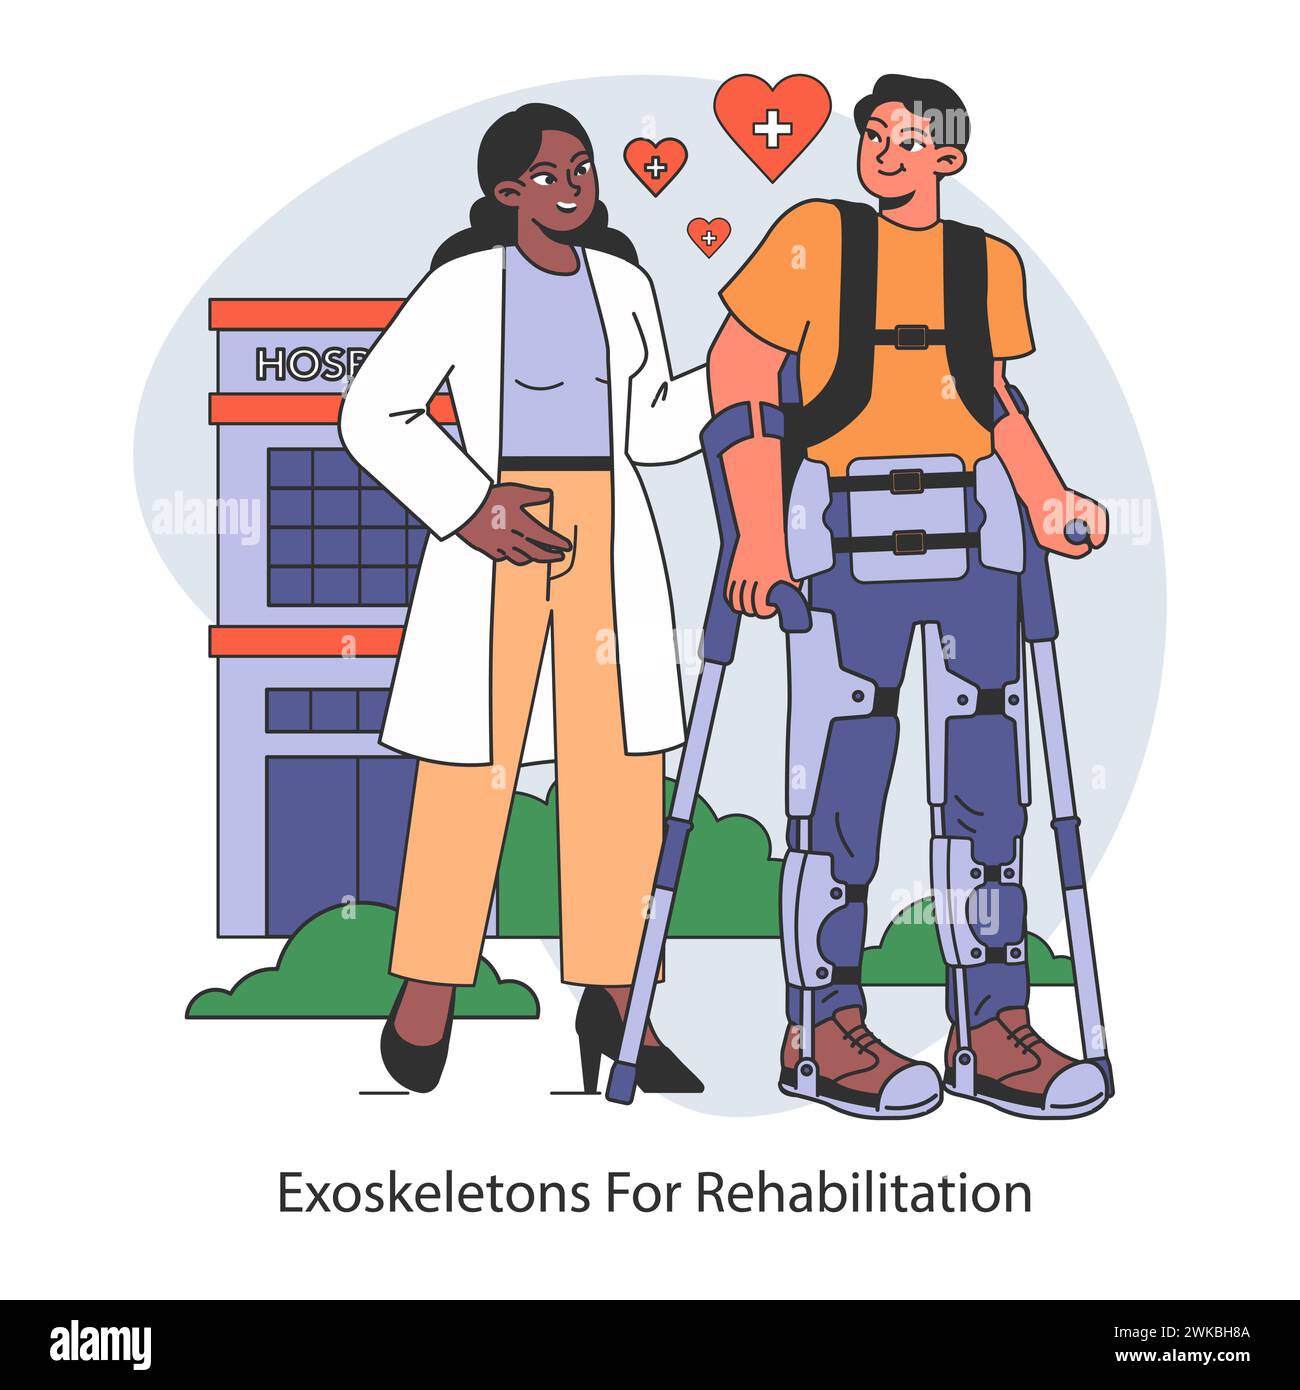 Concetto di innovazione nel campo della riabilitazione. Esoscheletri che favoriscono la mobilità e il recupero, migliorando l'assistenza ai pazienti in ambito clinico. Illustrazione vettoriale piatta. Illustrazione Vettoriale